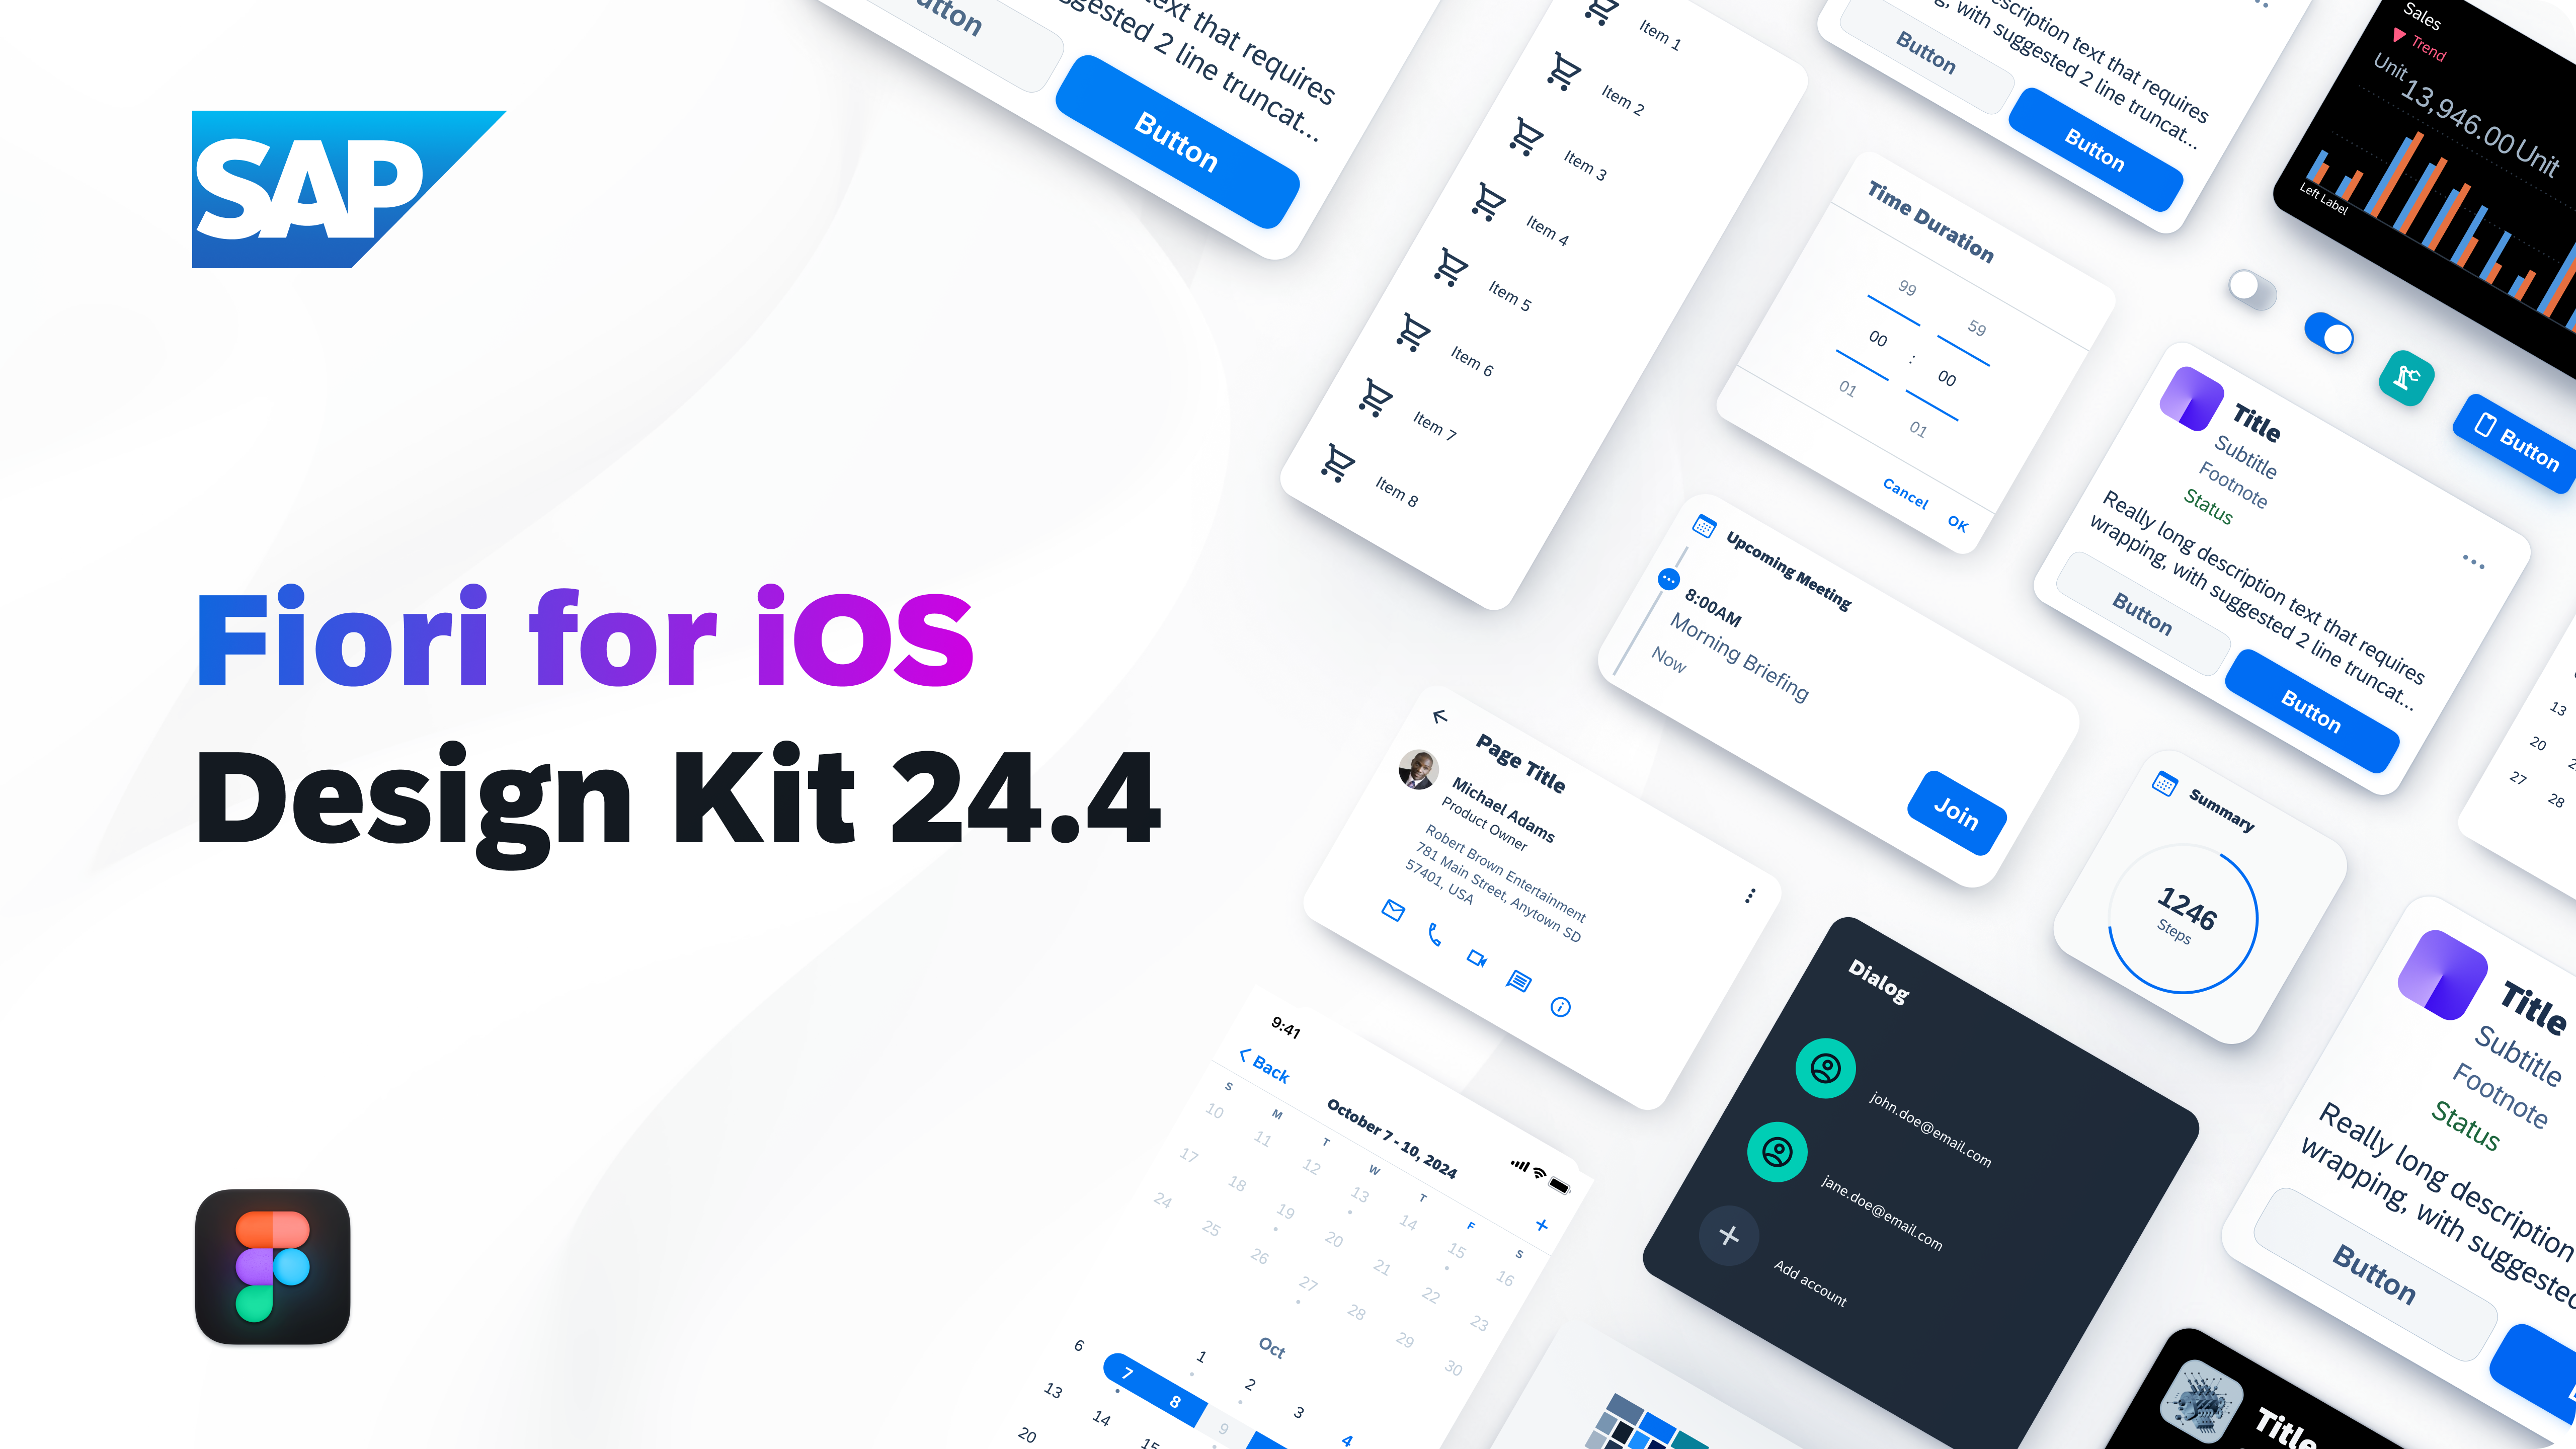 SAP Fiori for iOS Design Kit 24.4